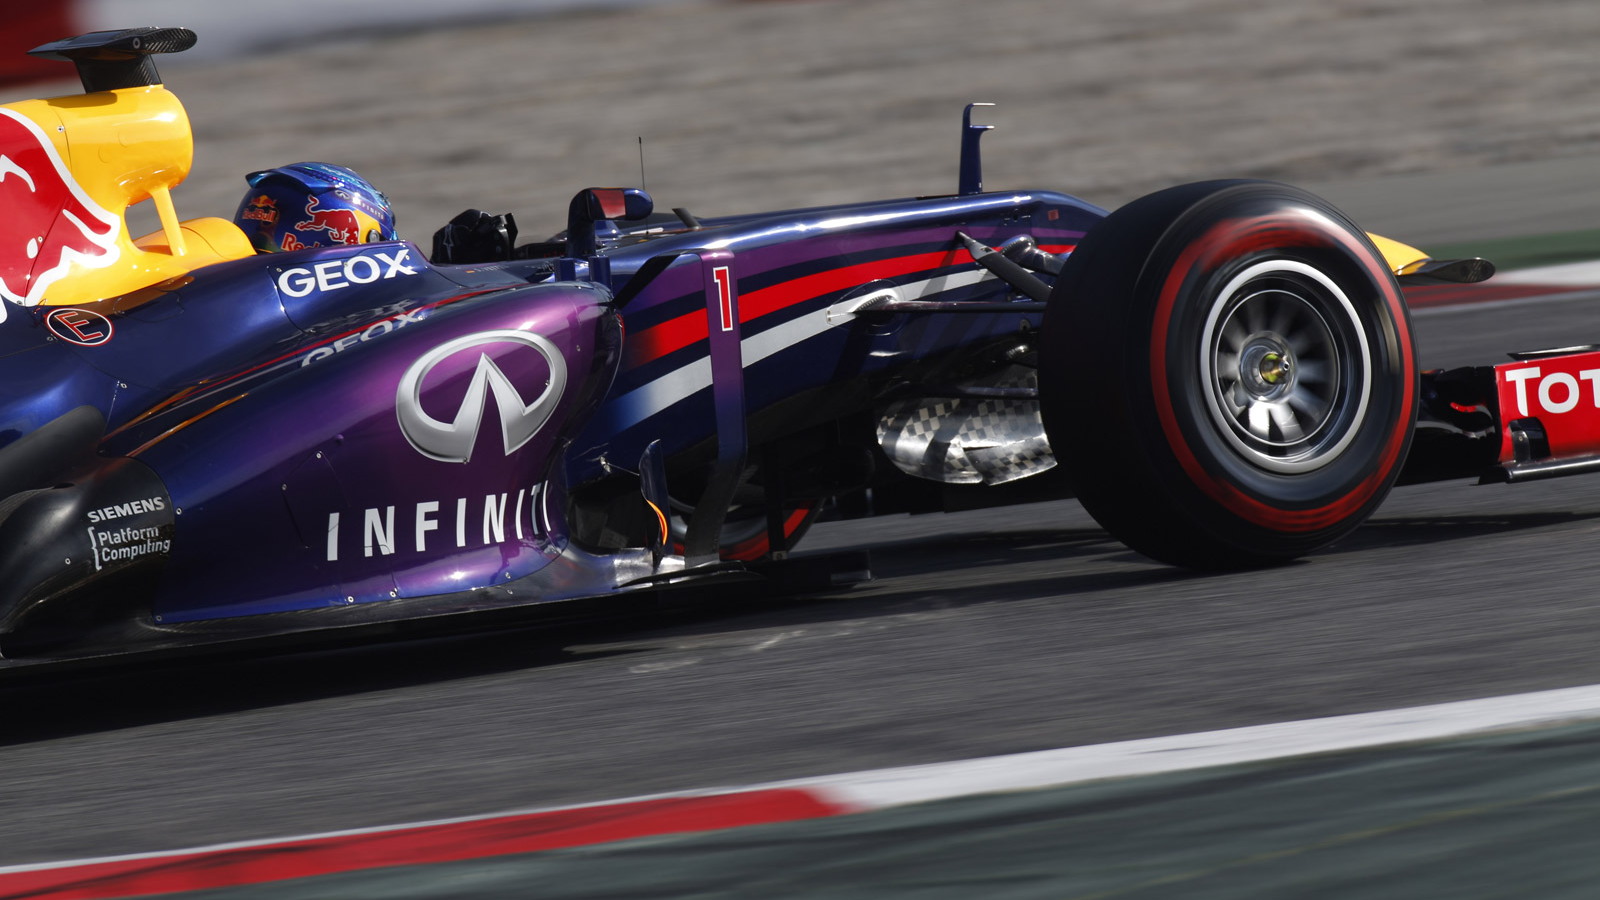 Infiniti Red Bull Racing 2013 Formula One car